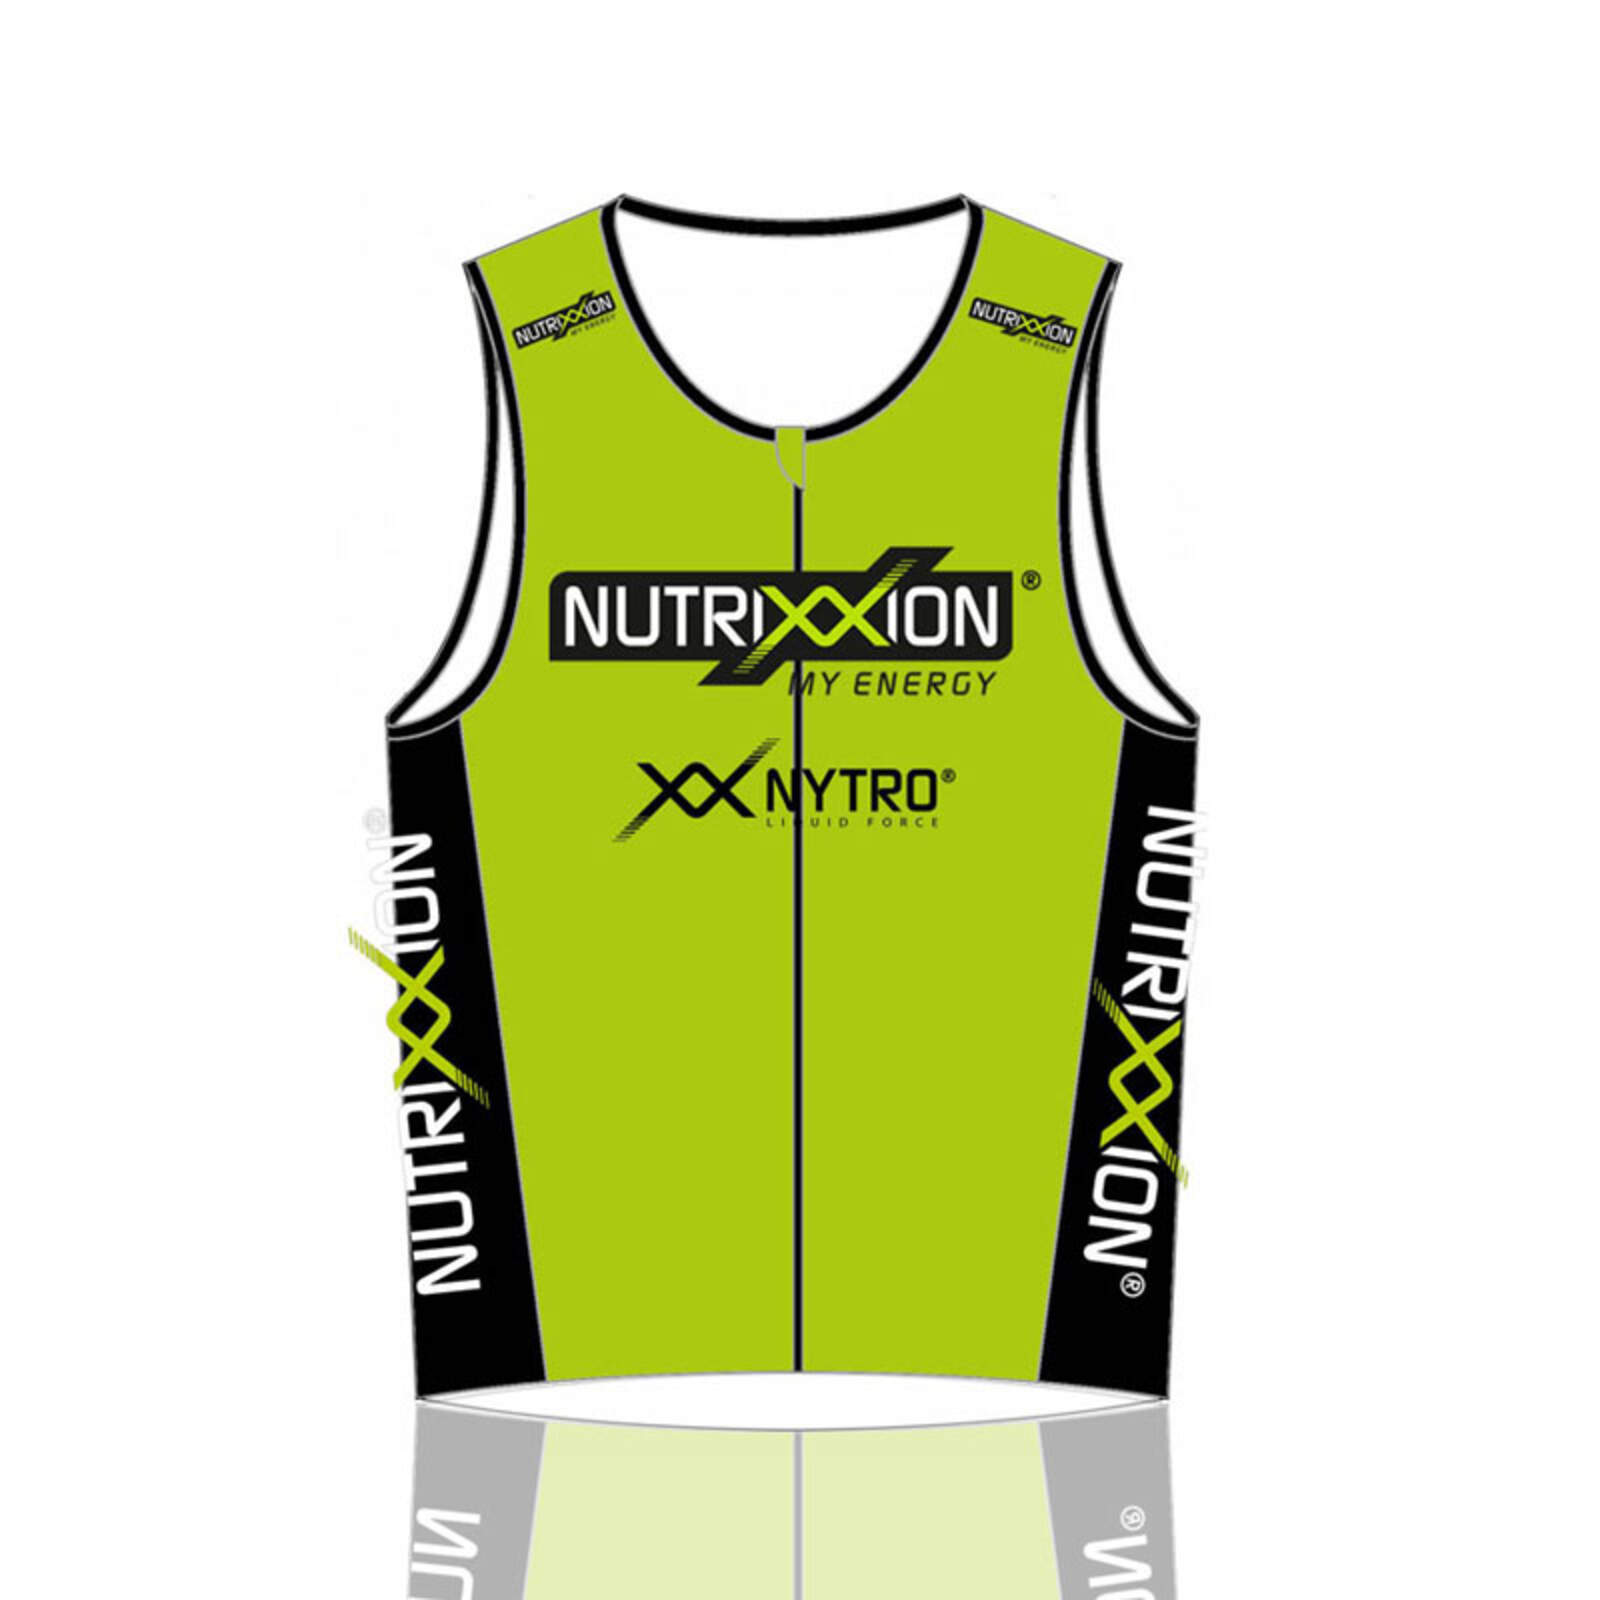 Nutrixxion Triathlon Top XL